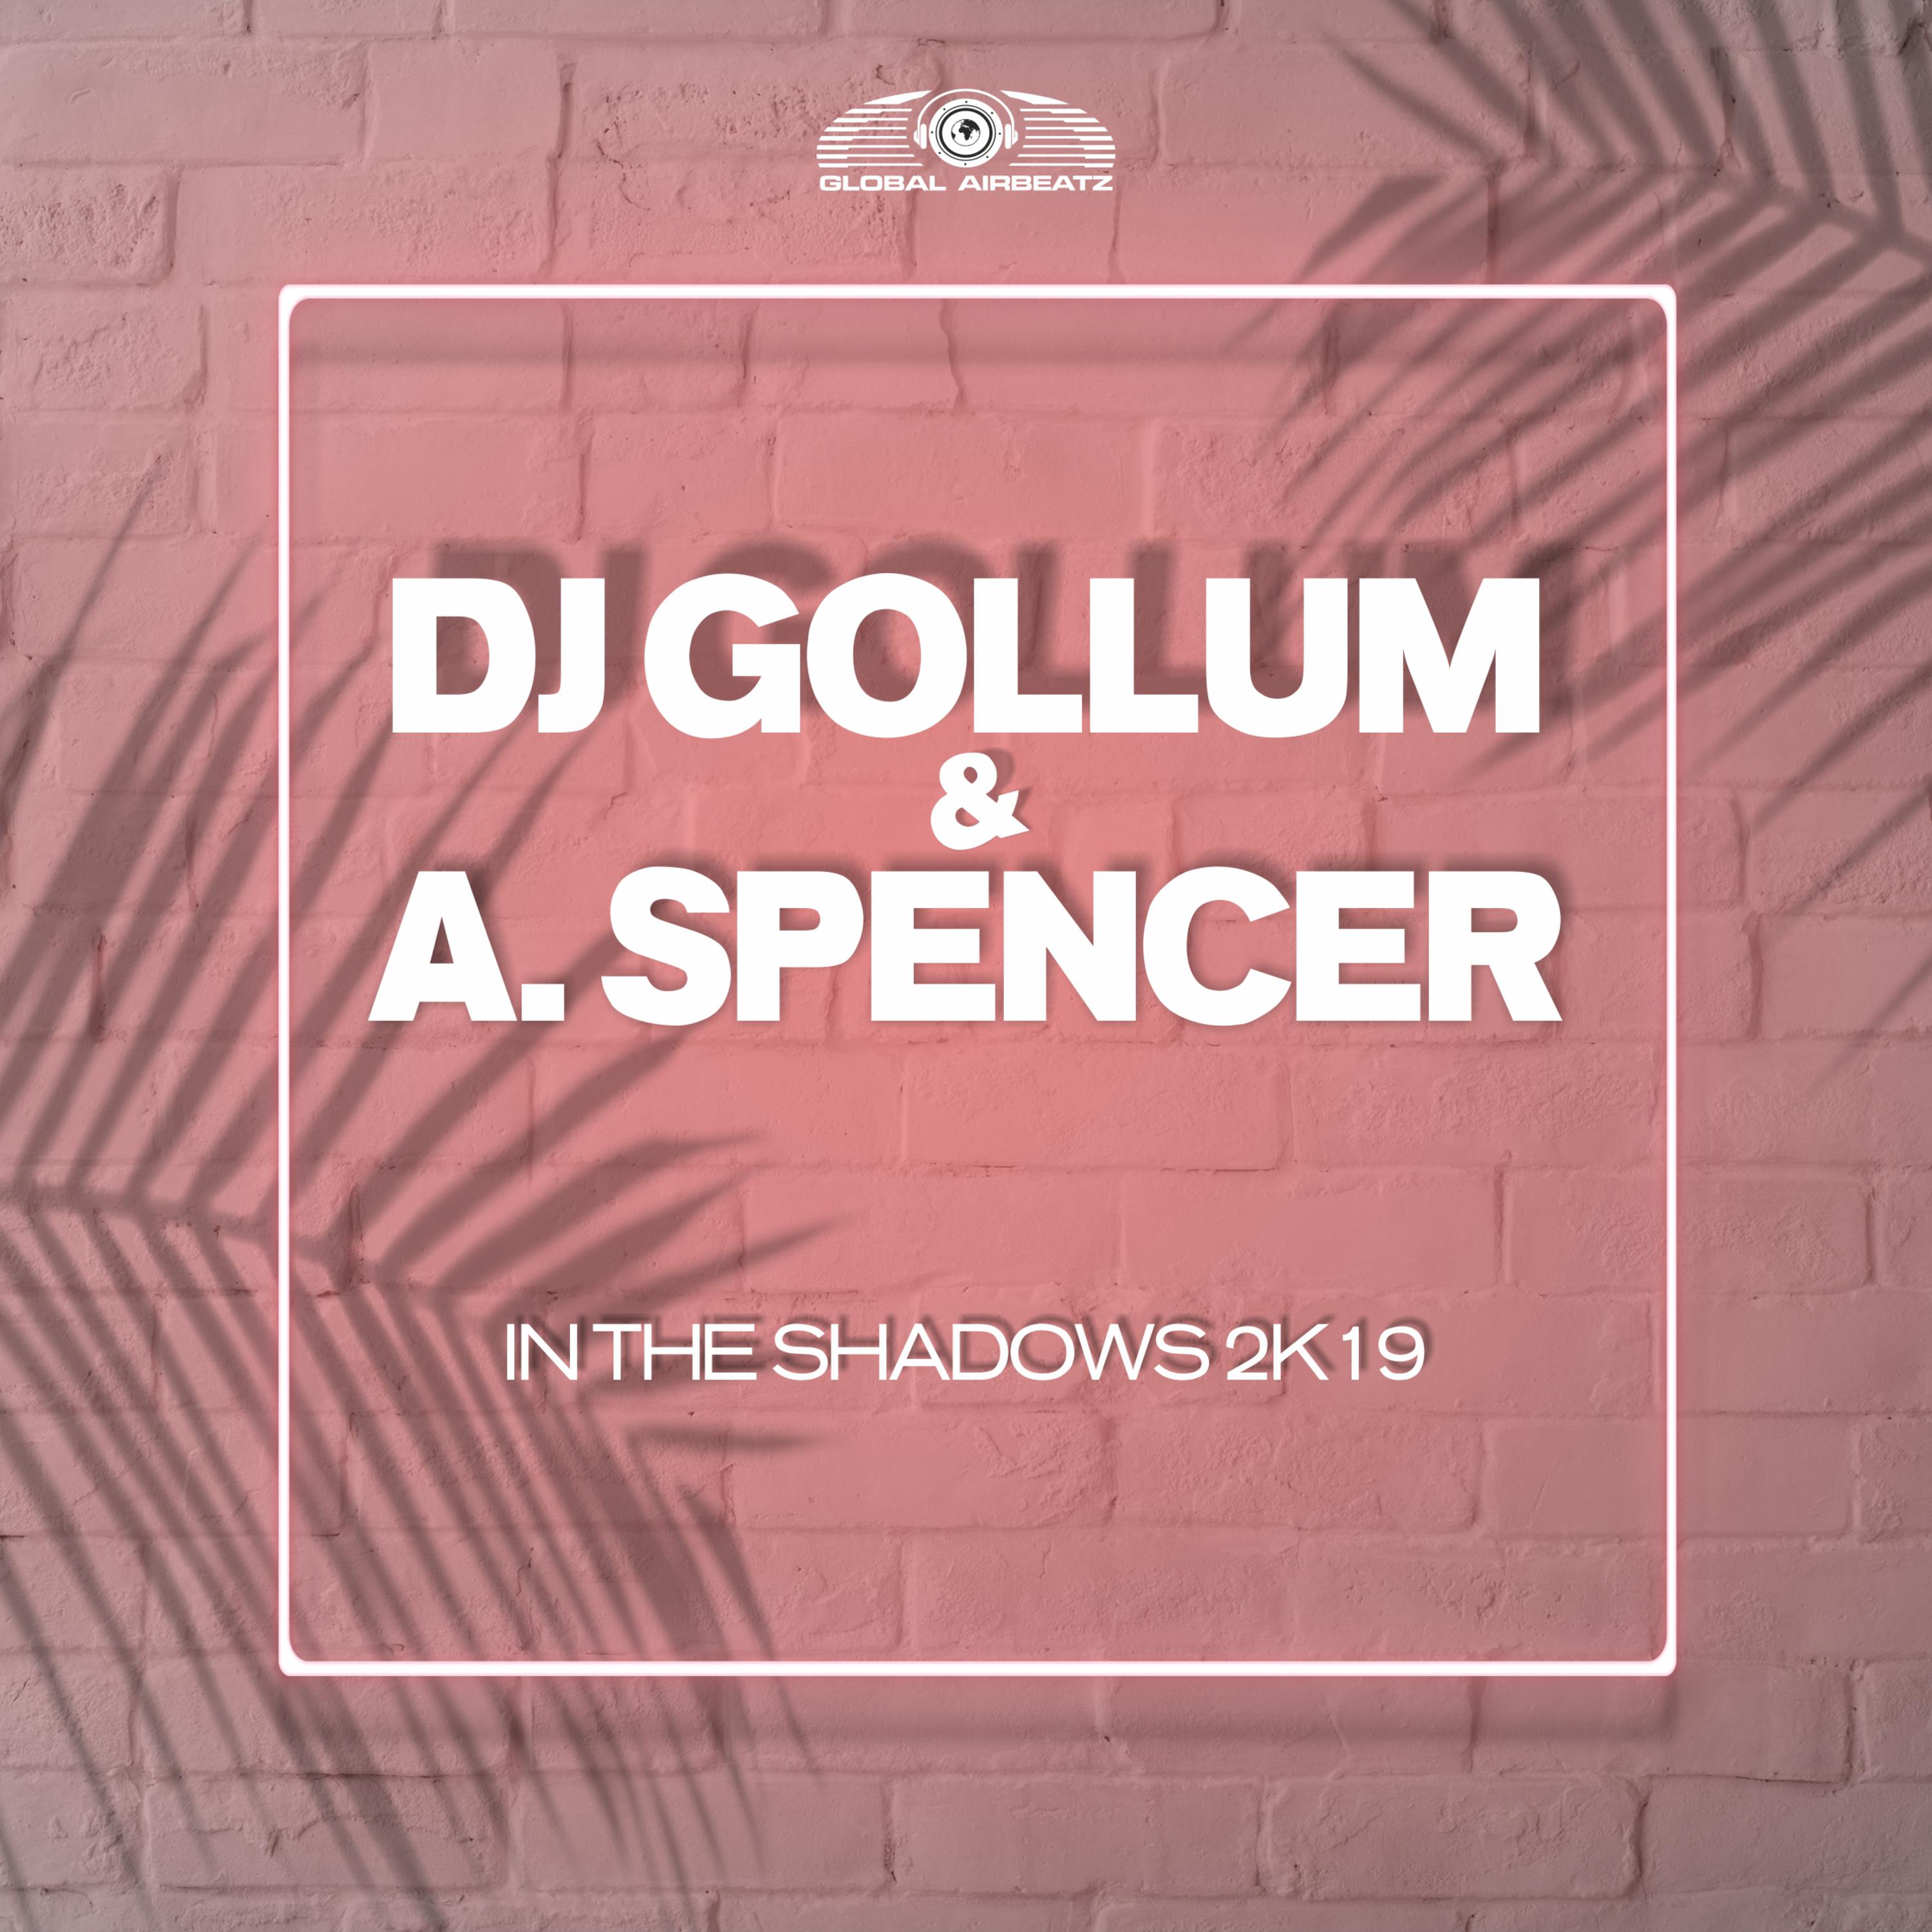 DJ Gollum - In the Shadows 2k19 (DJ Gollum Psy Radio Edit)